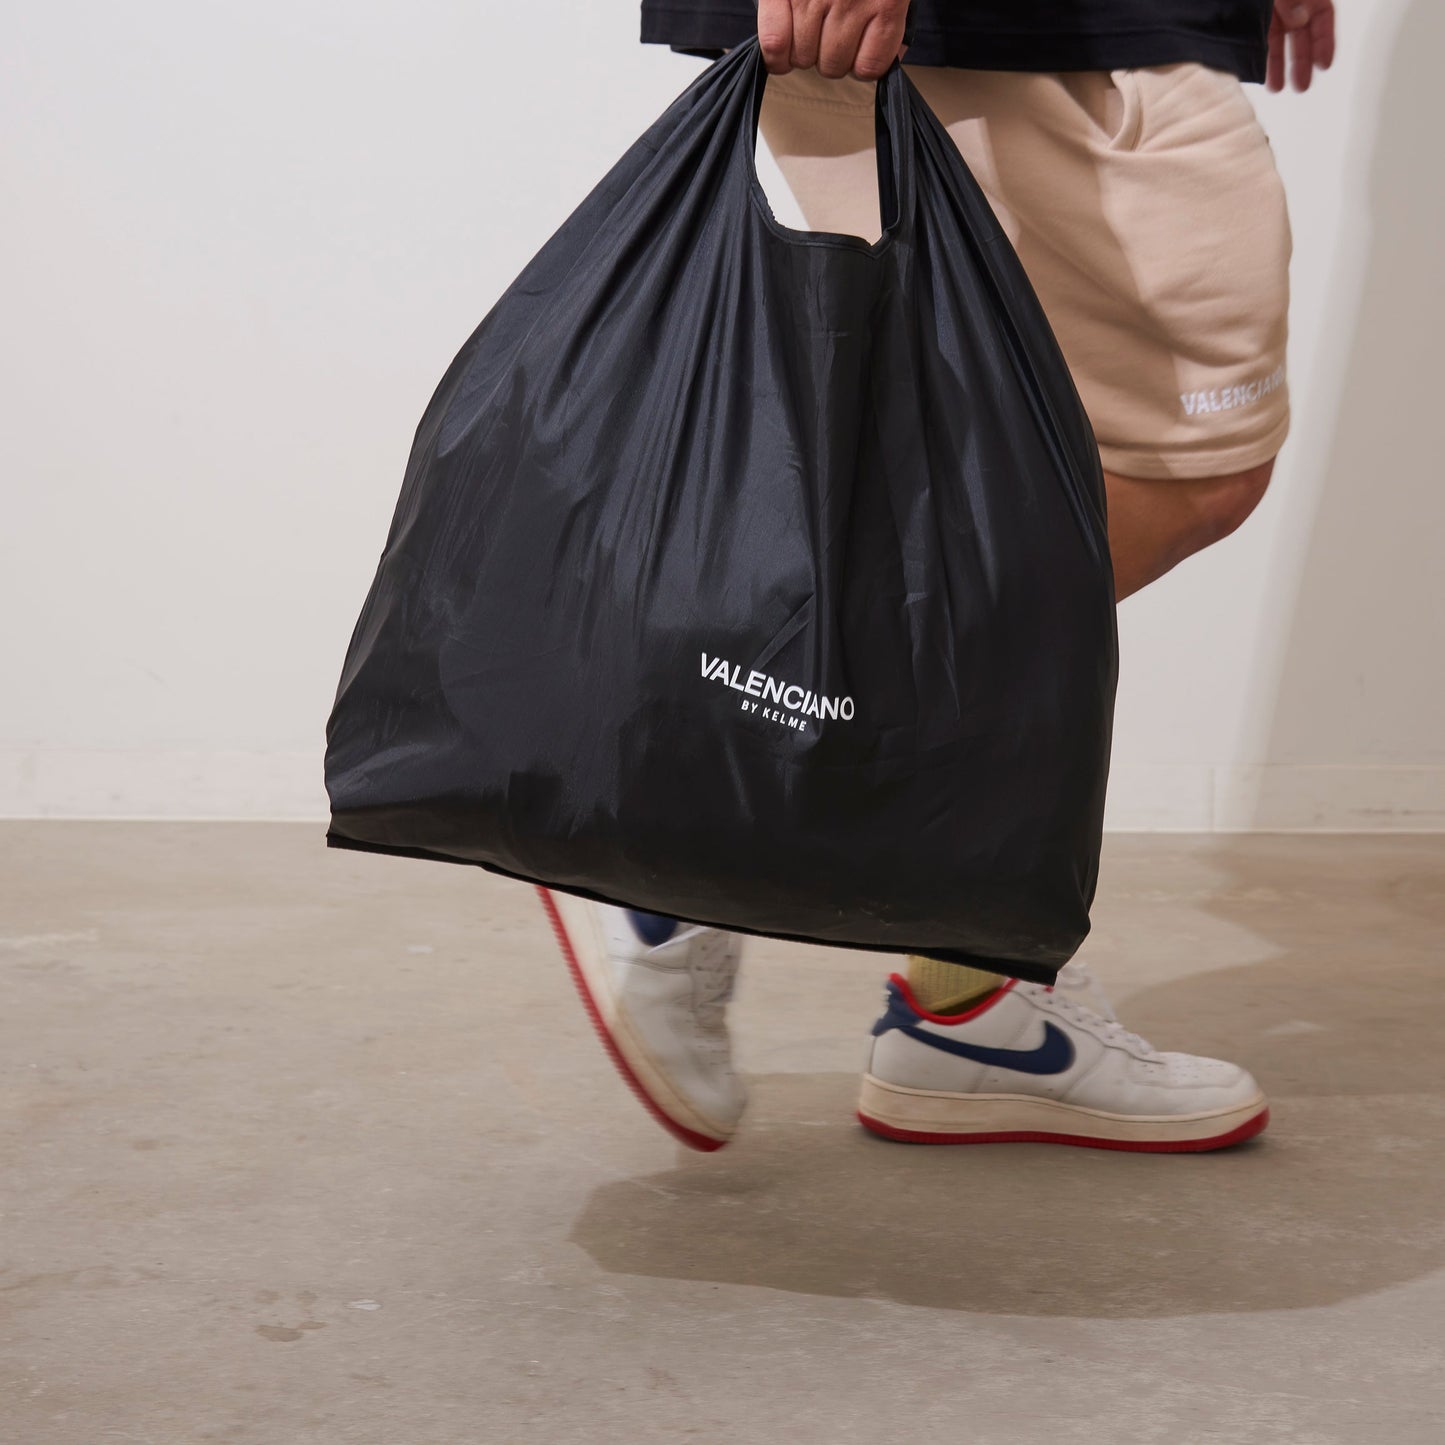 Too big reusable bag